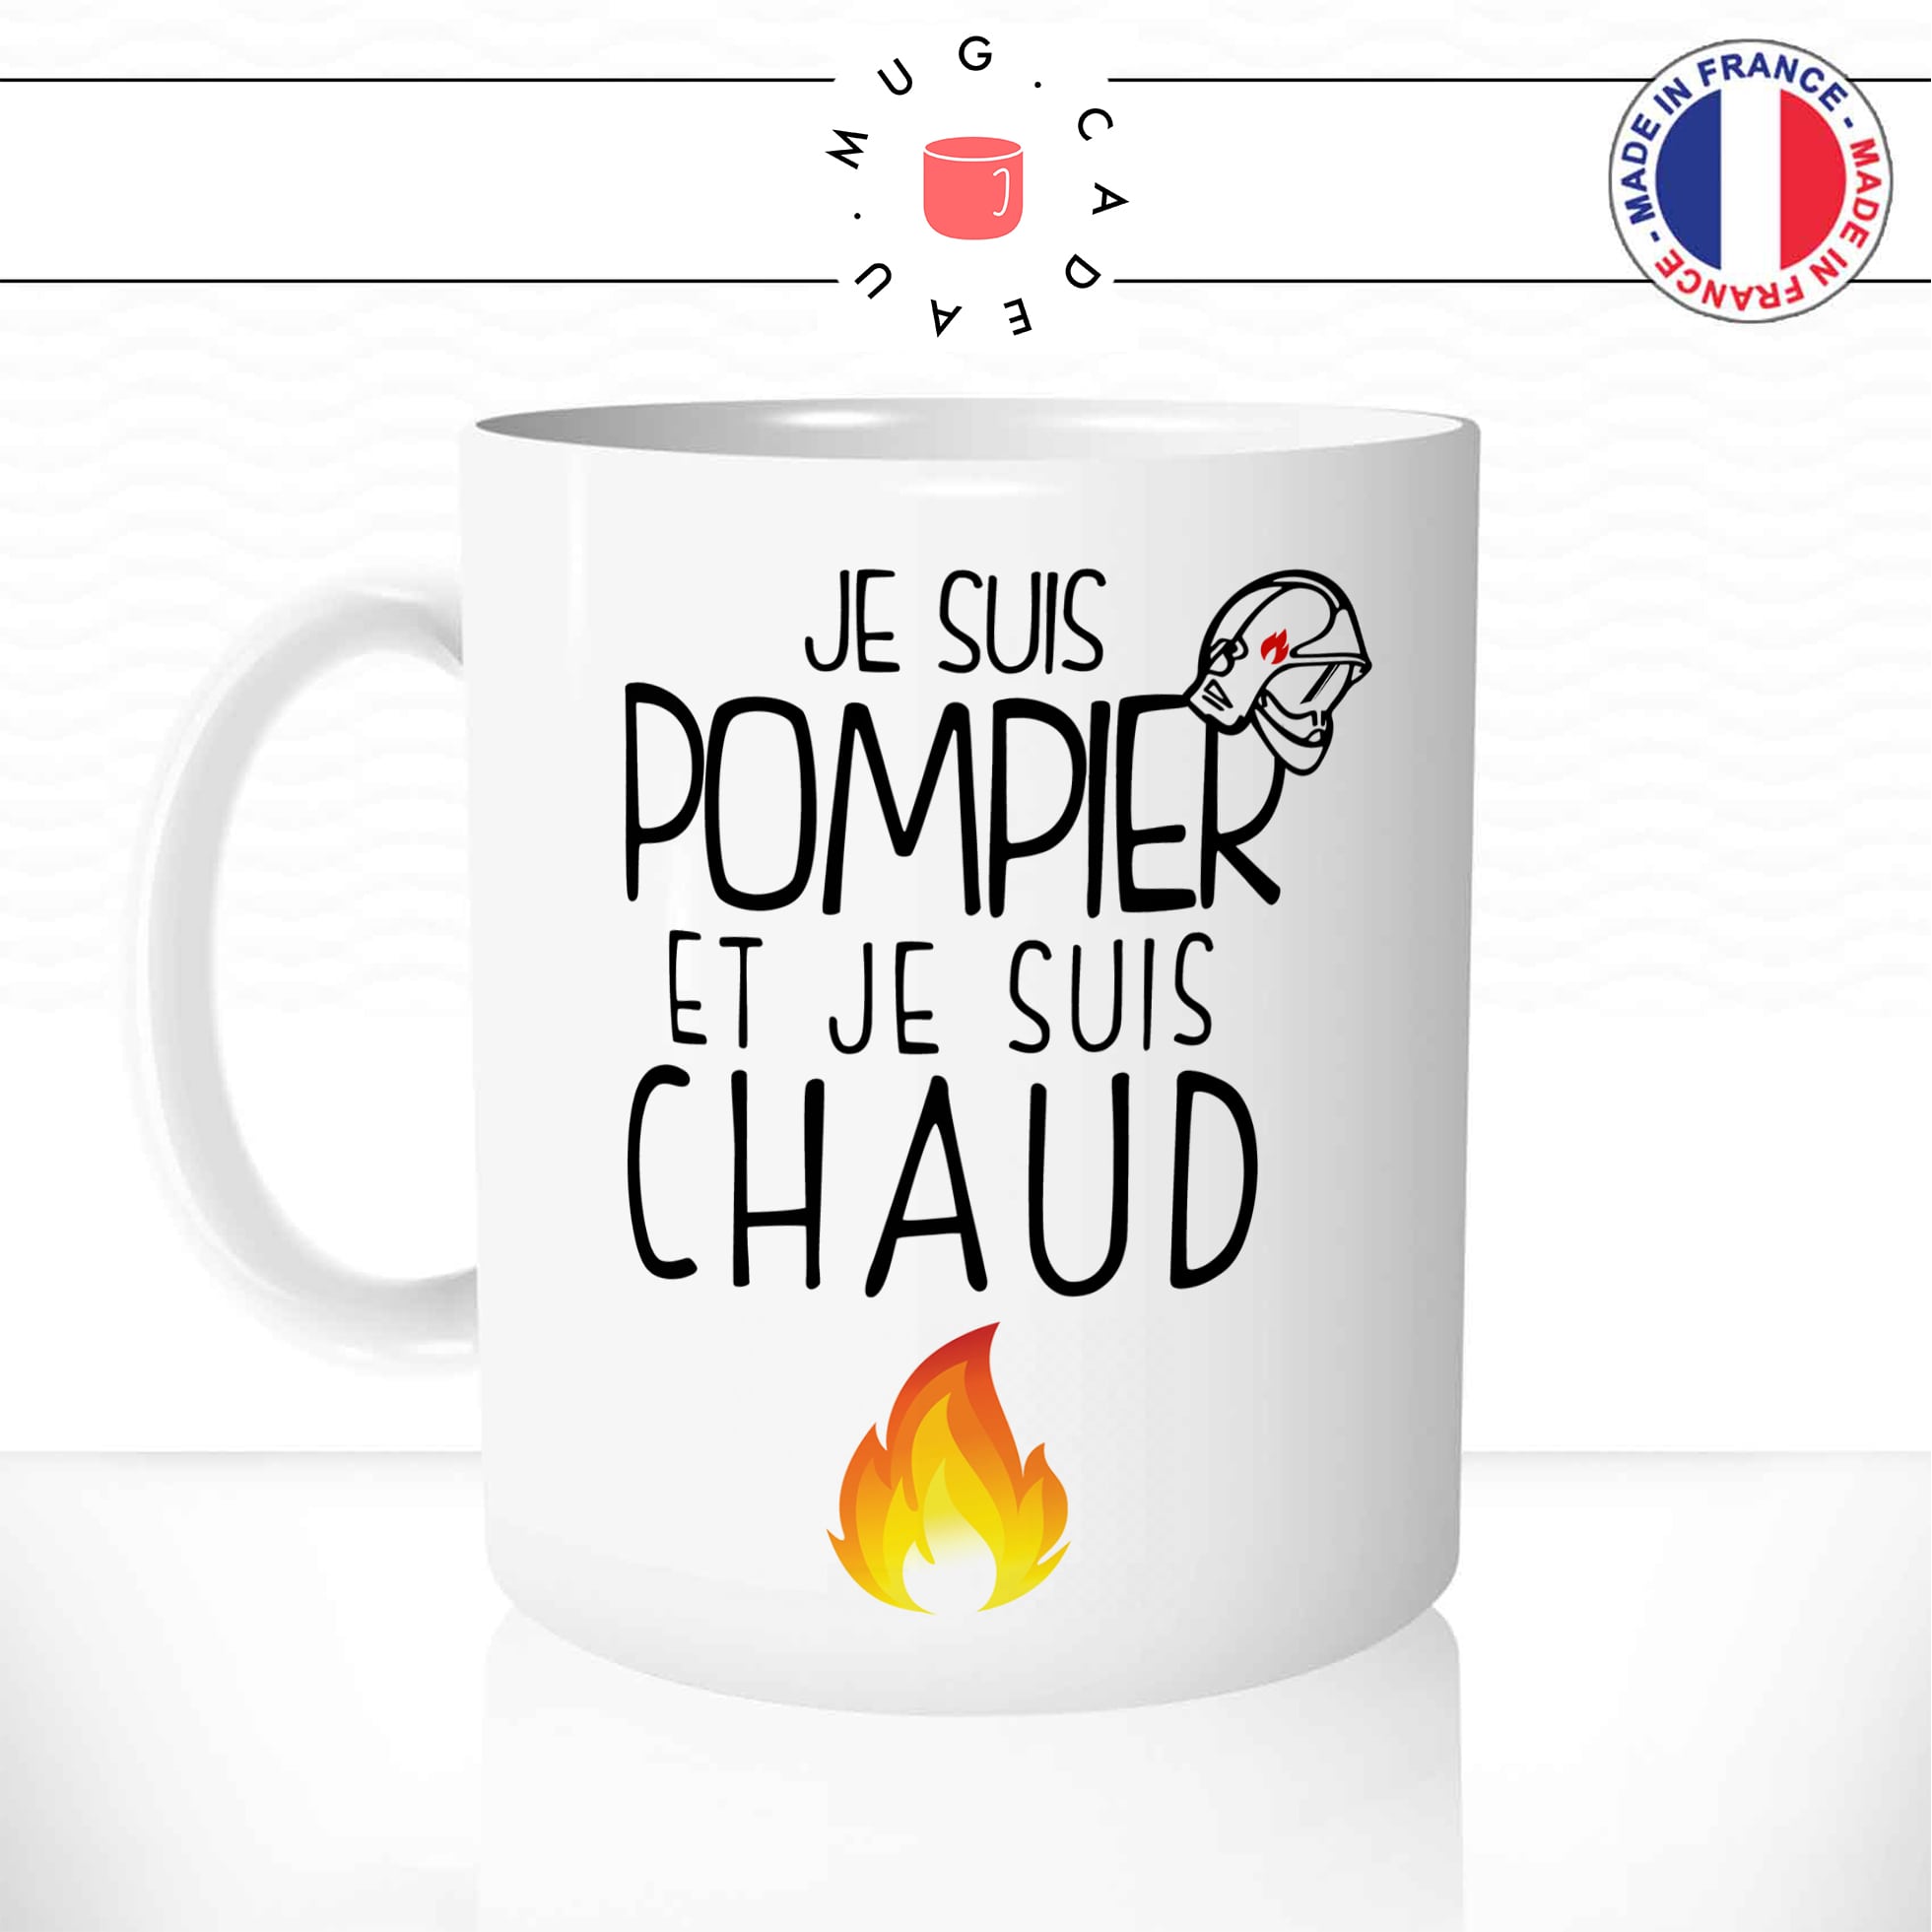 Mug pompier - Tasse original - Fabriqué en France - Livraison rapide!